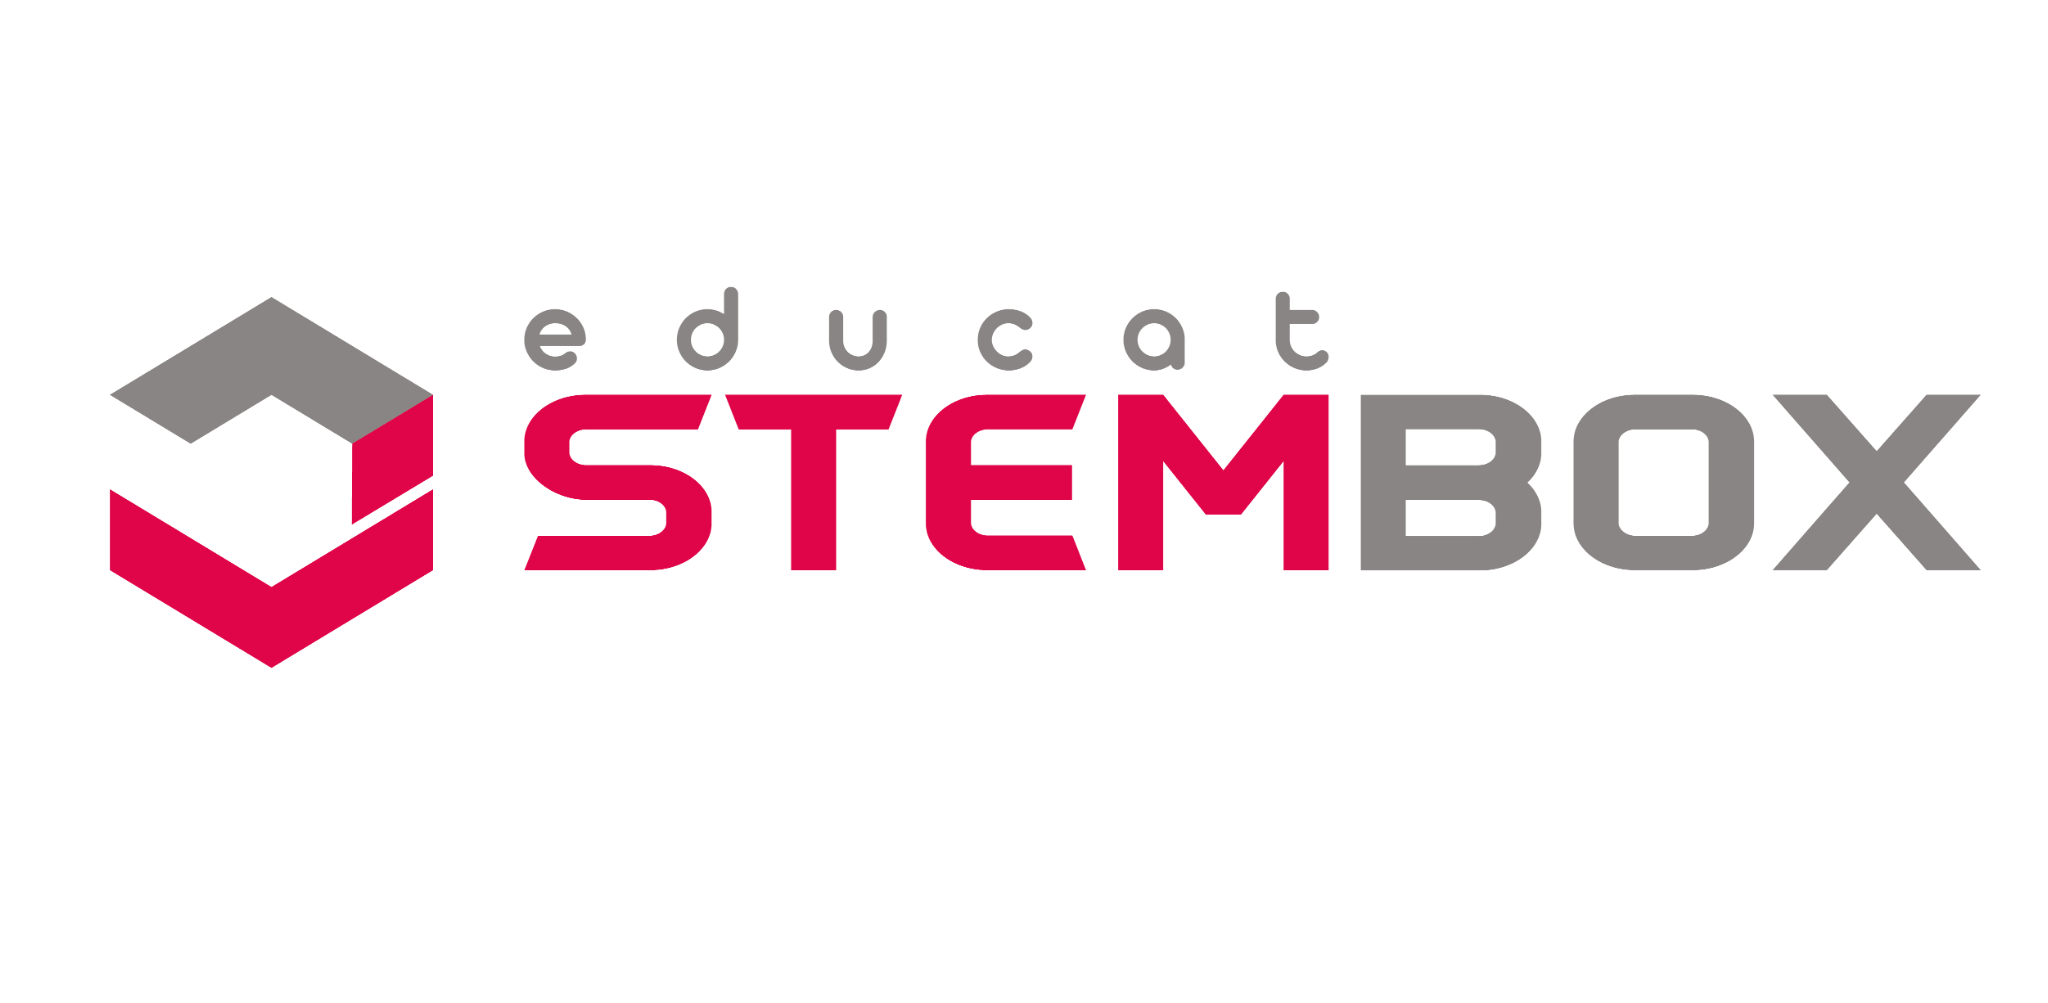 EducatStembox Logo